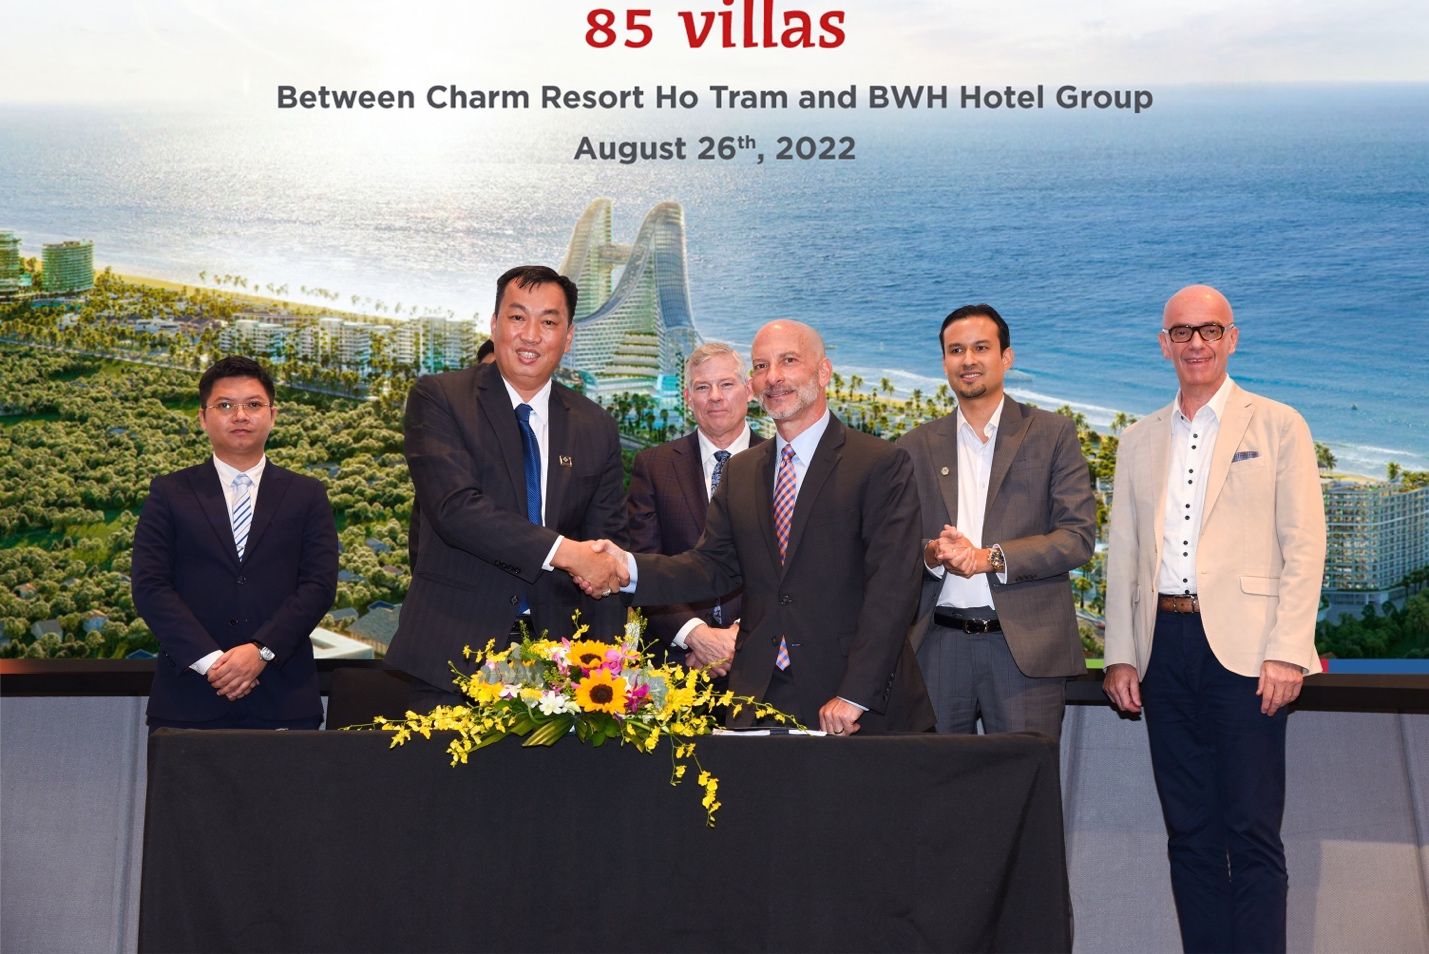 Bộ ba thương hiệu thuộc BWH Hotel Group góp phần nâng tầm Charm Resort Hồ Tràm